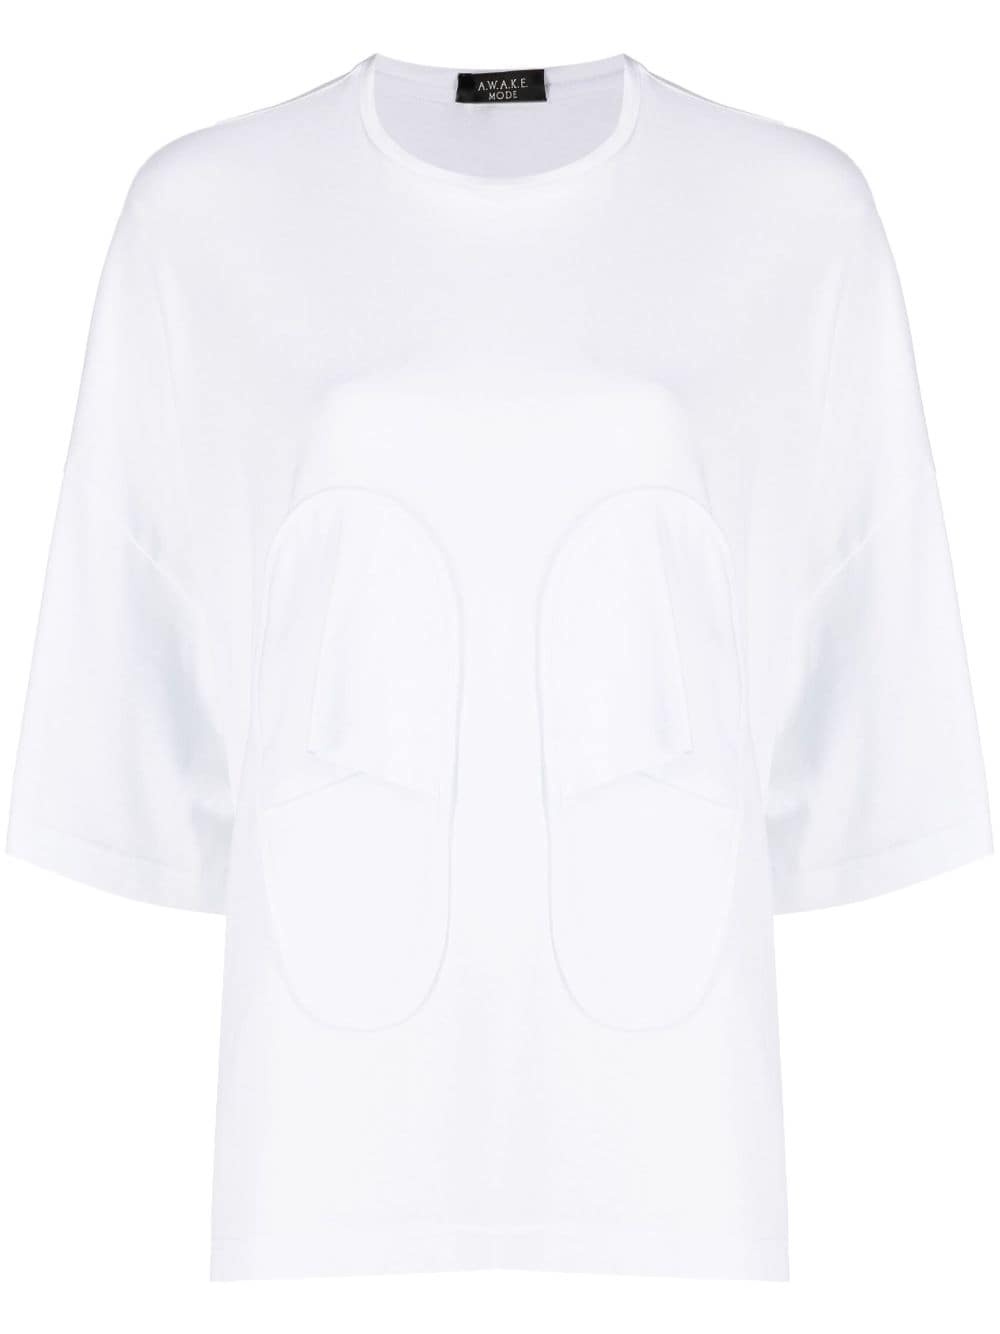 A.W.A.K.E. Mode slipper-detailing organic cotton T-shirt - White von A.W.A.K.E. Mode